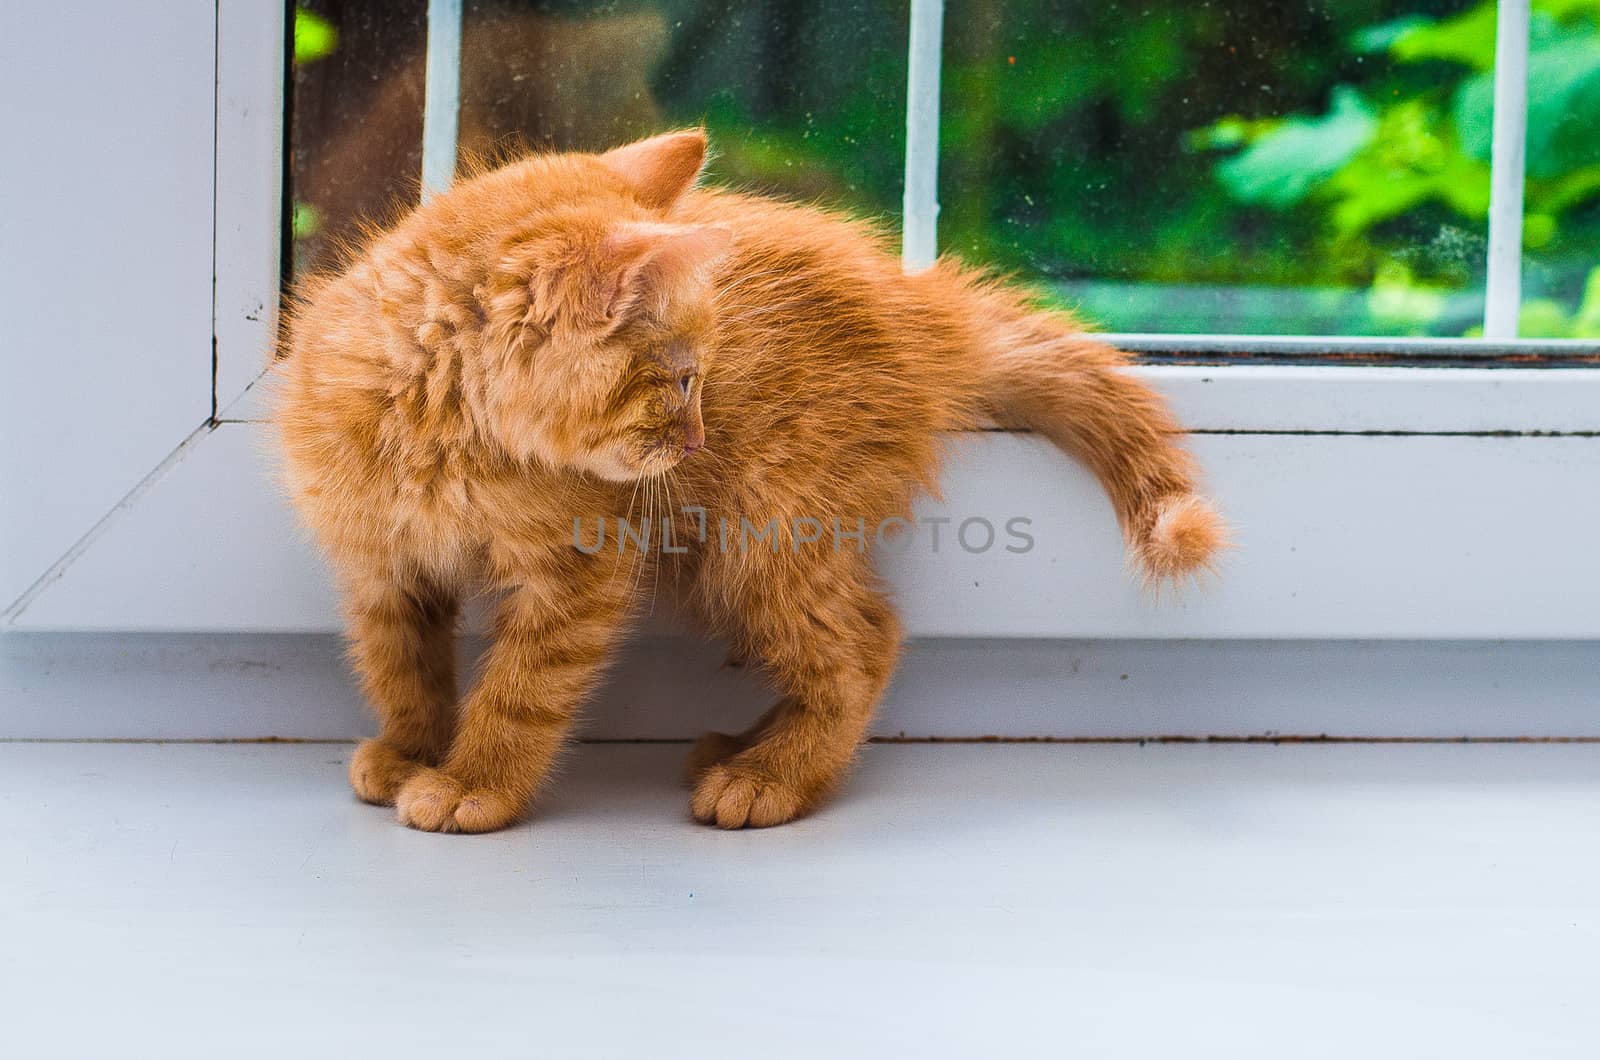 little ginger kitten on the windowsill by chernobrovin